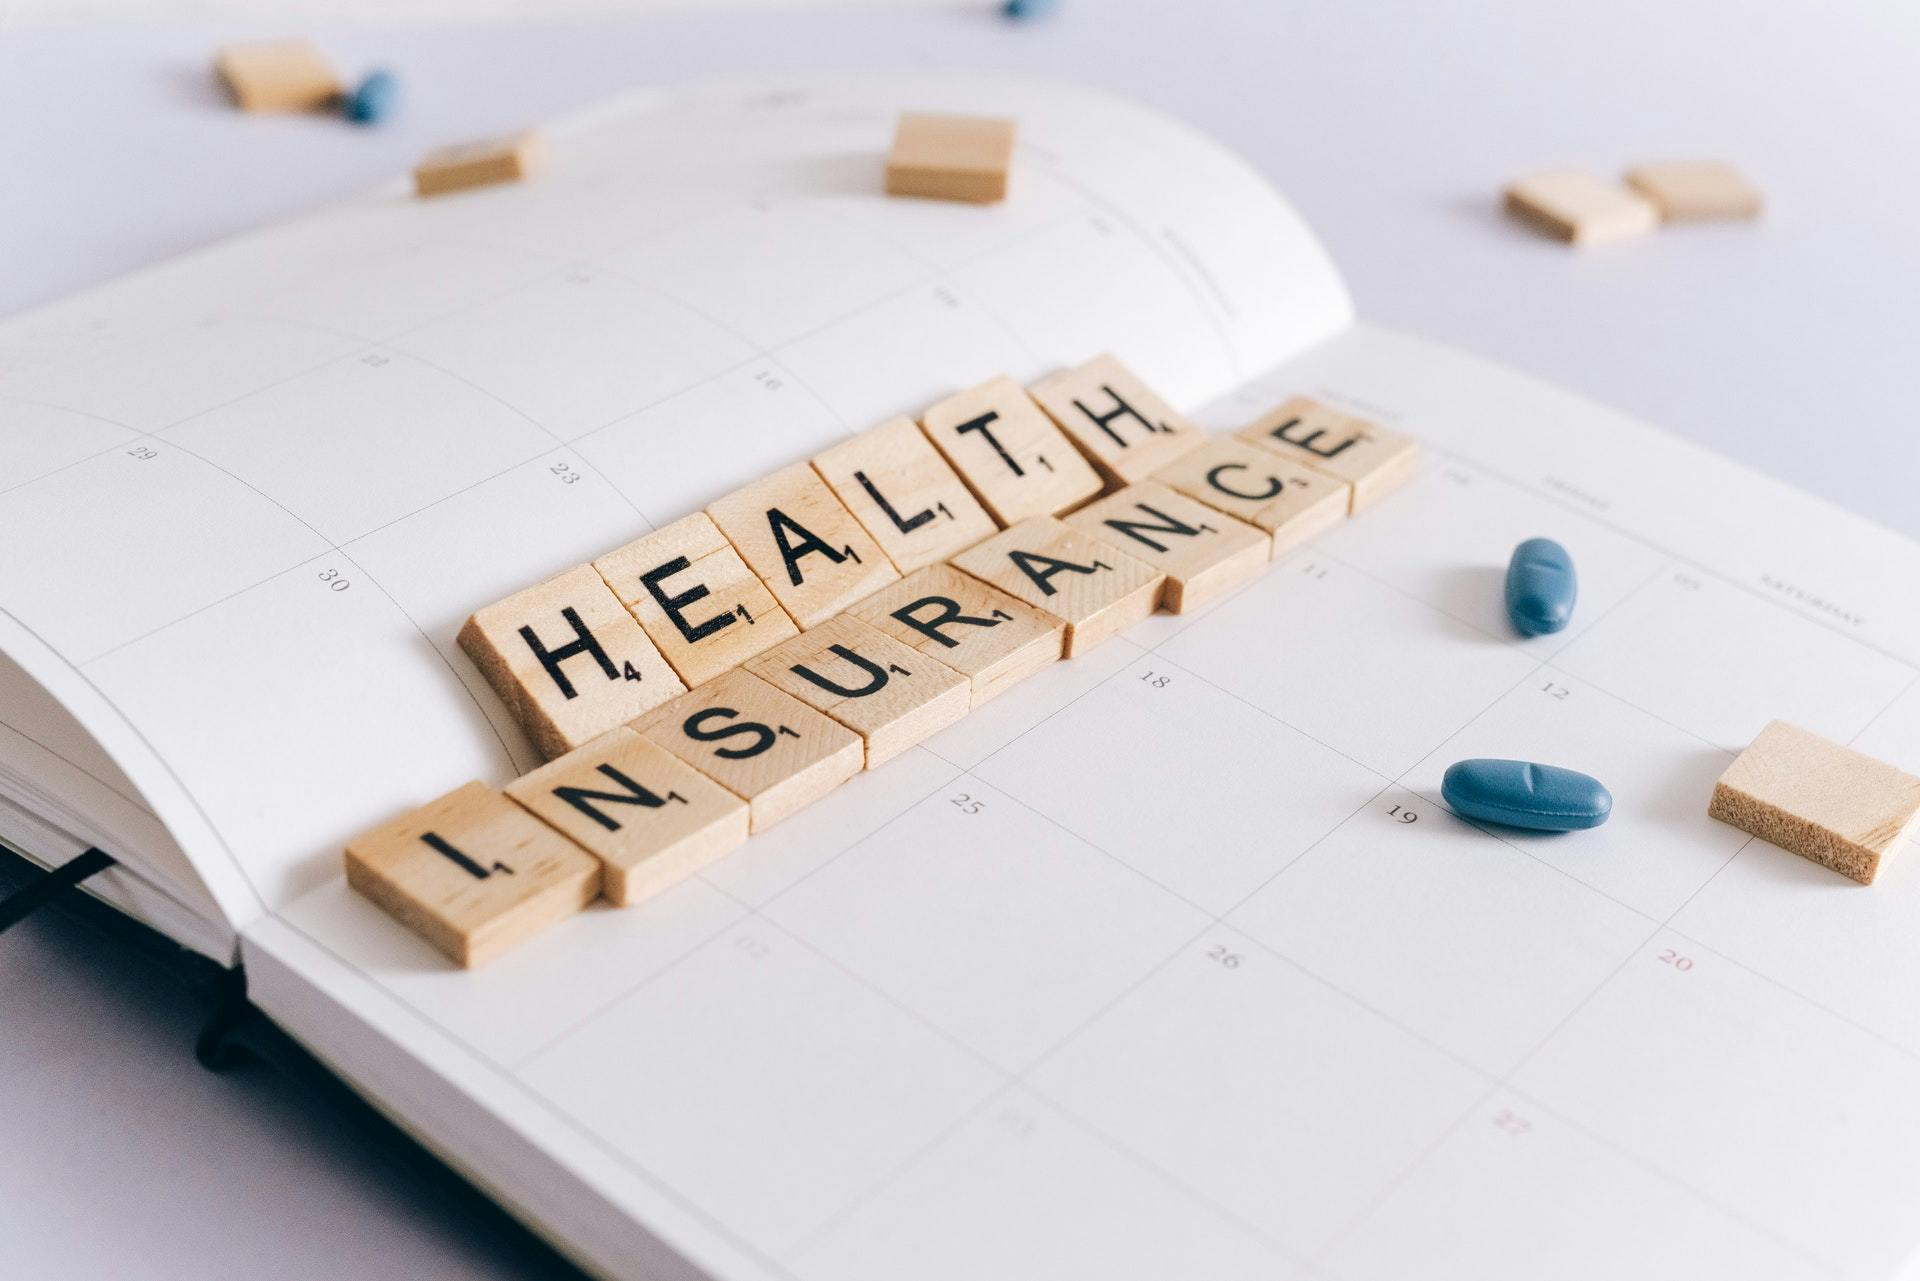 Health insurance written in Scrabble tiles